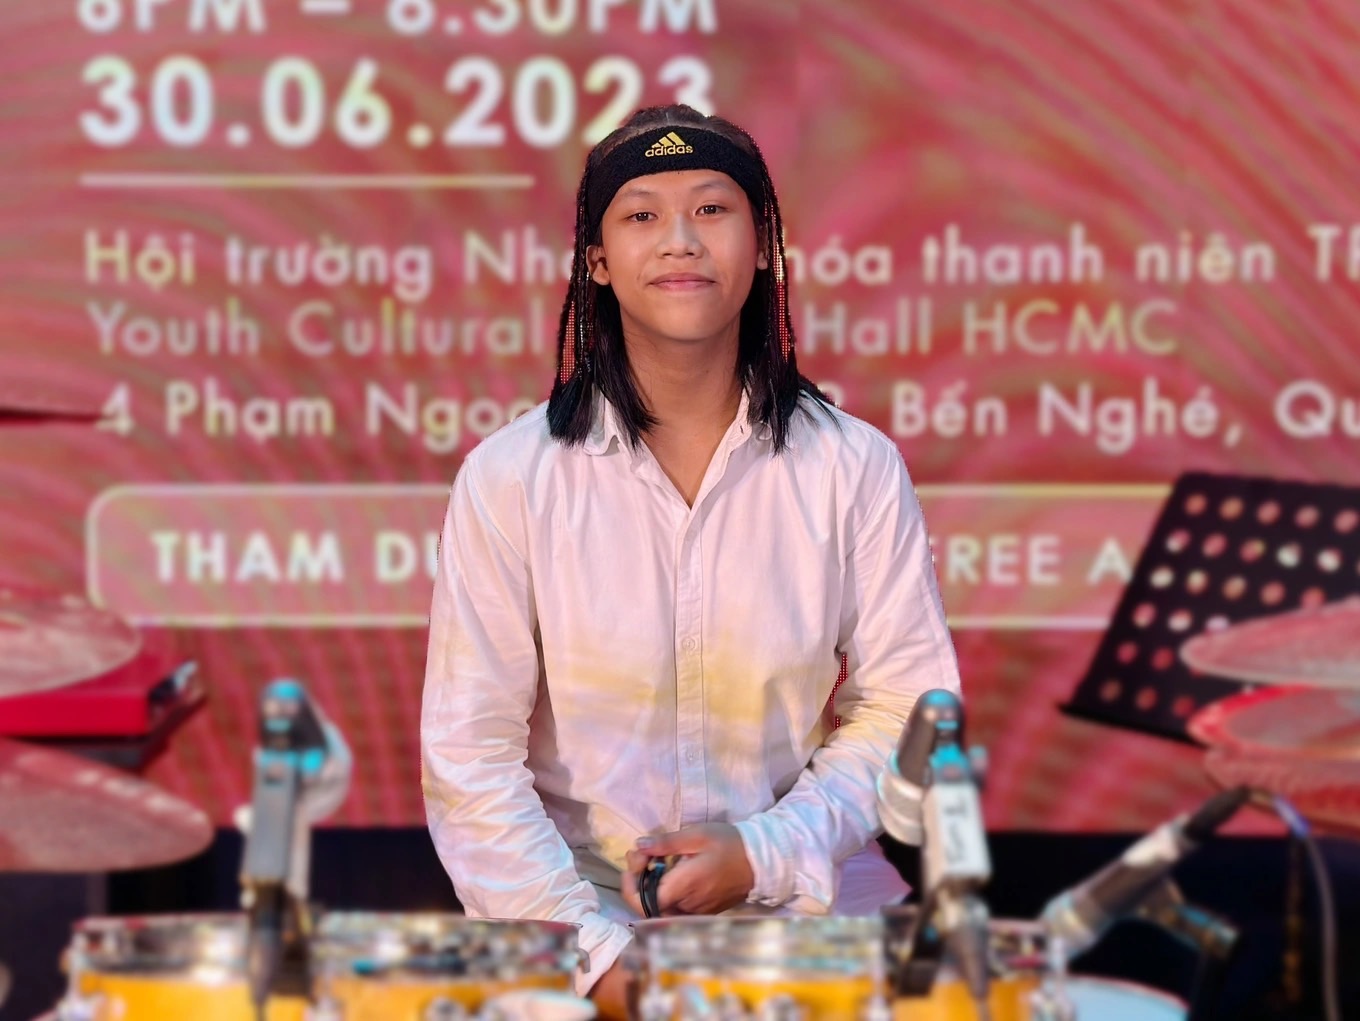 Quán quân Vietnam's Got Talent - Trọng Nhân sau 7 năm đăng quang - Ảnh 2.